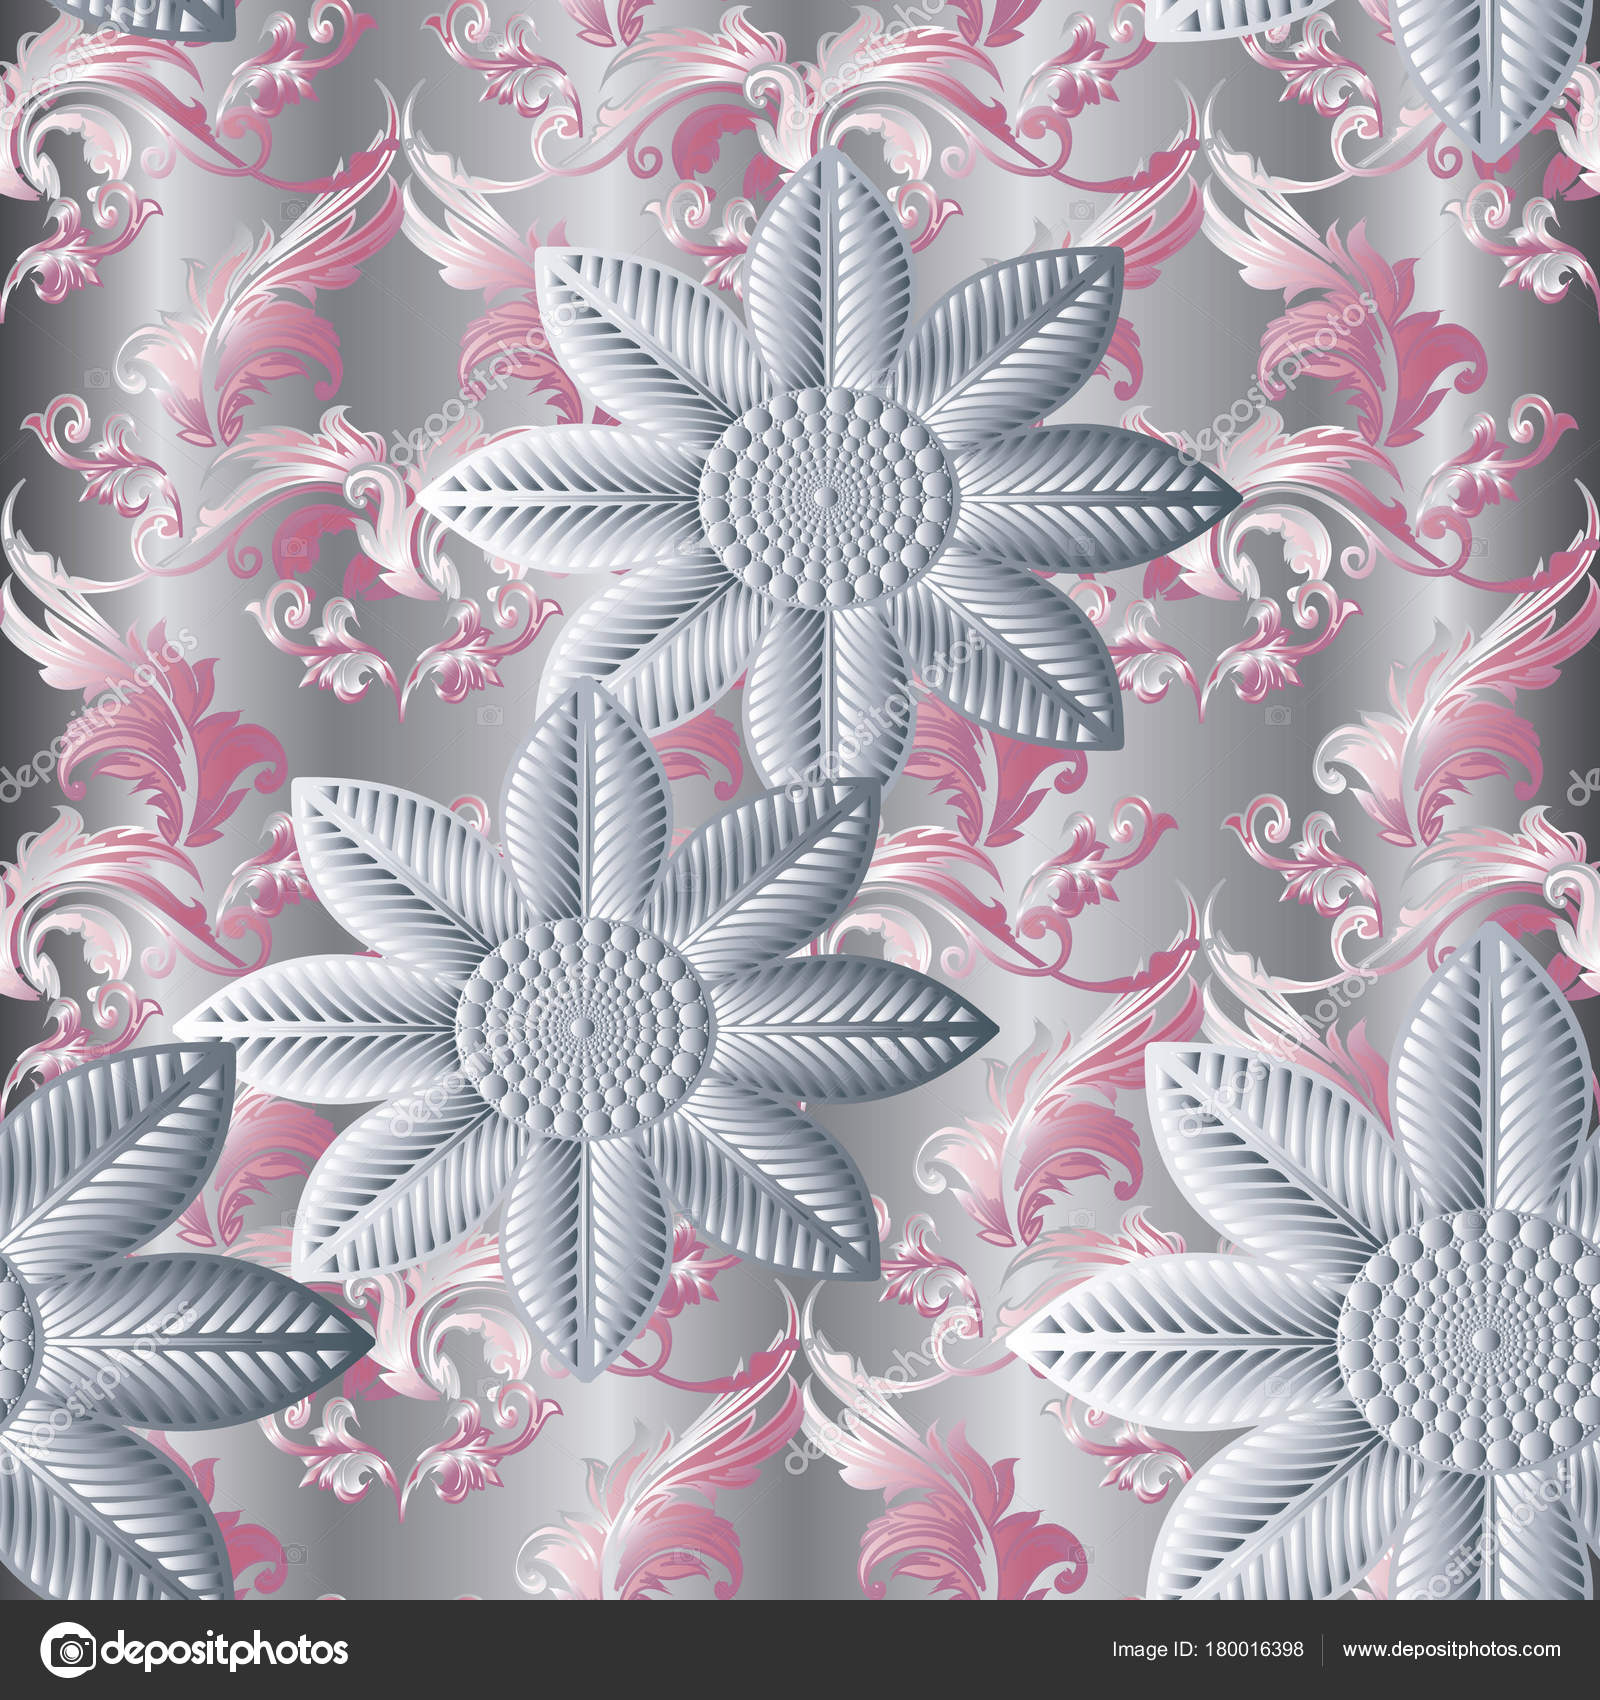 3d background wallpaper,pattern,pink,design,textile,floral design